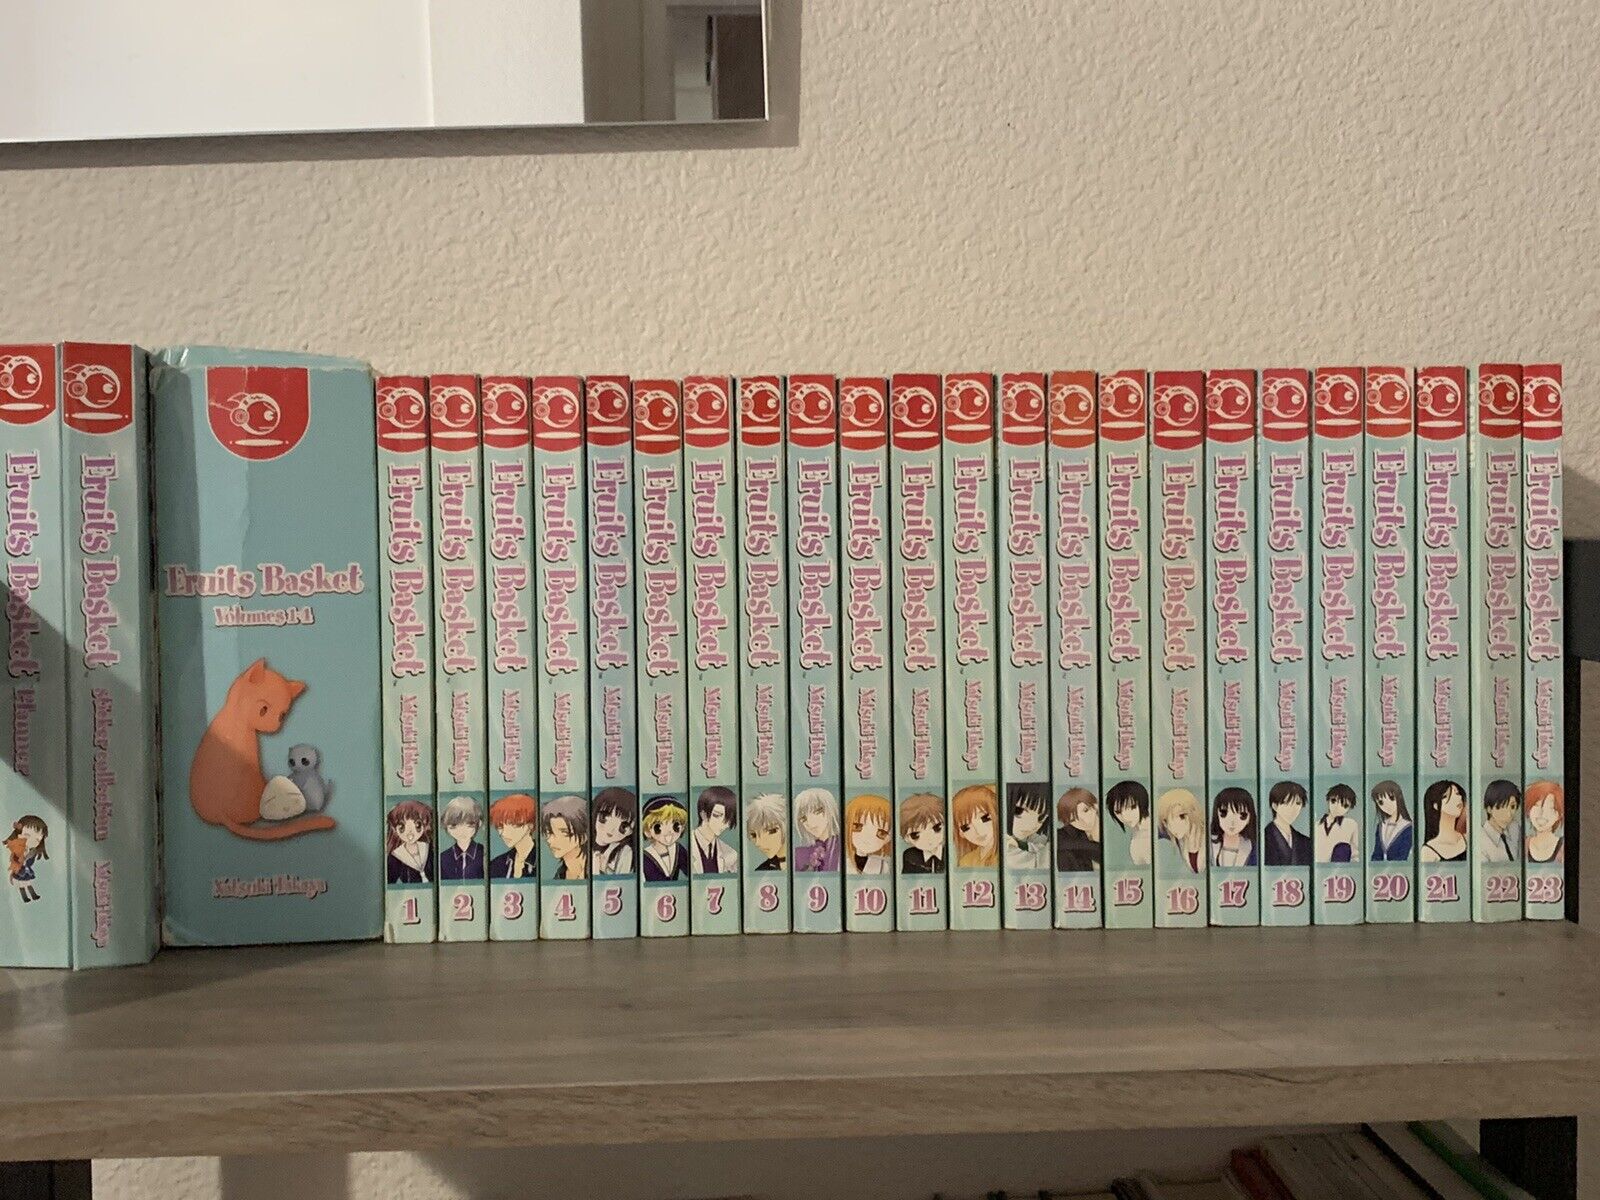 Fruits Basket Manga Complete Set Volume 1-23 English Tokyopop Version Excellent